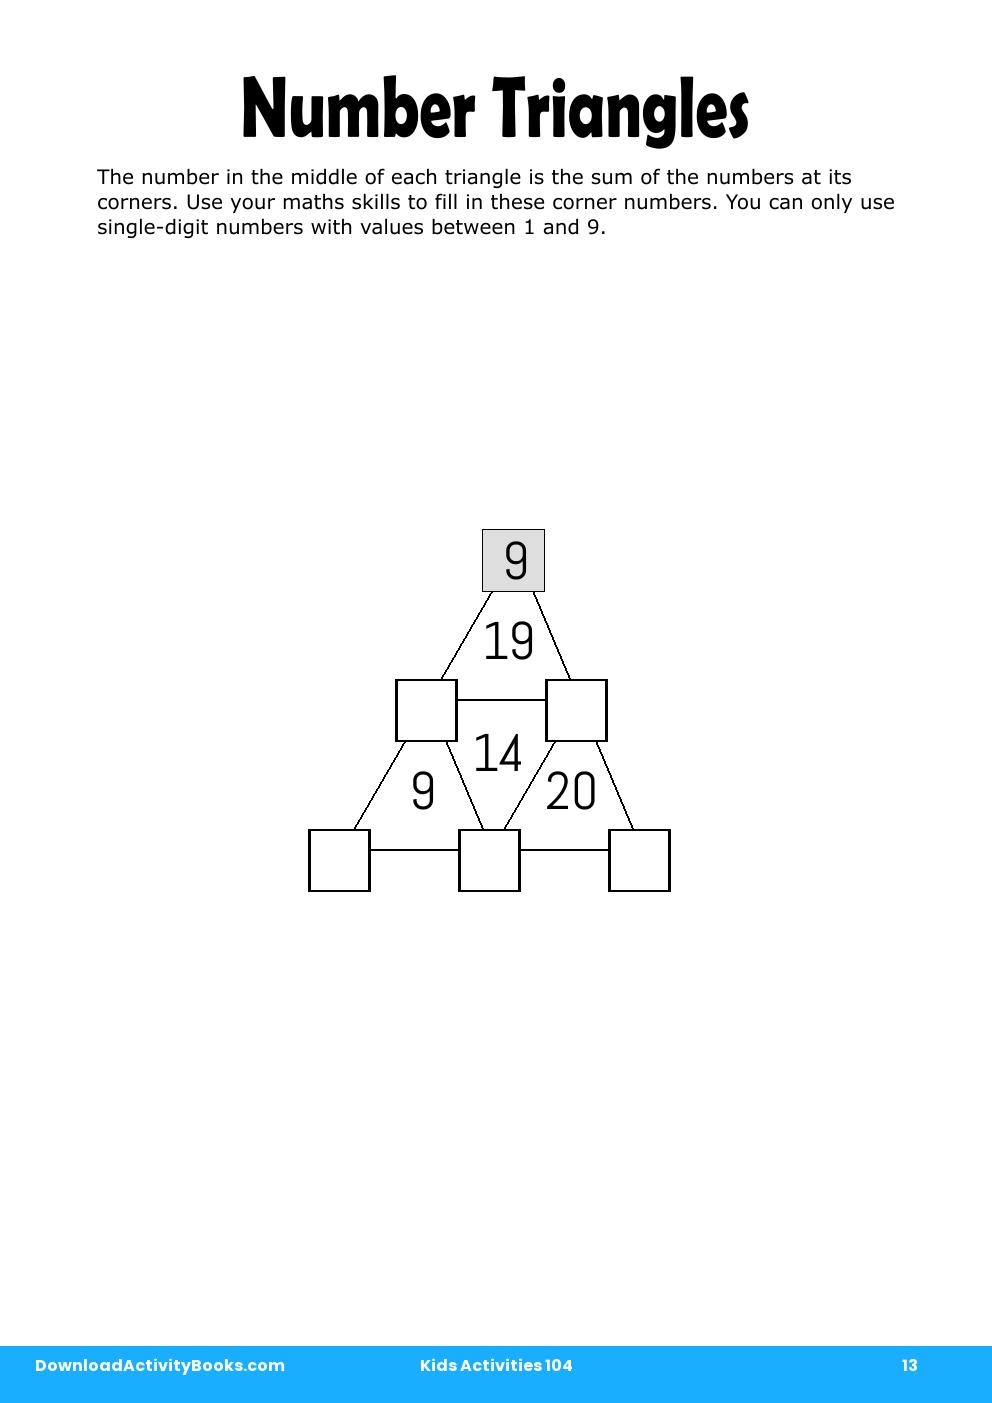 Number Triangles in Kids Activities 104